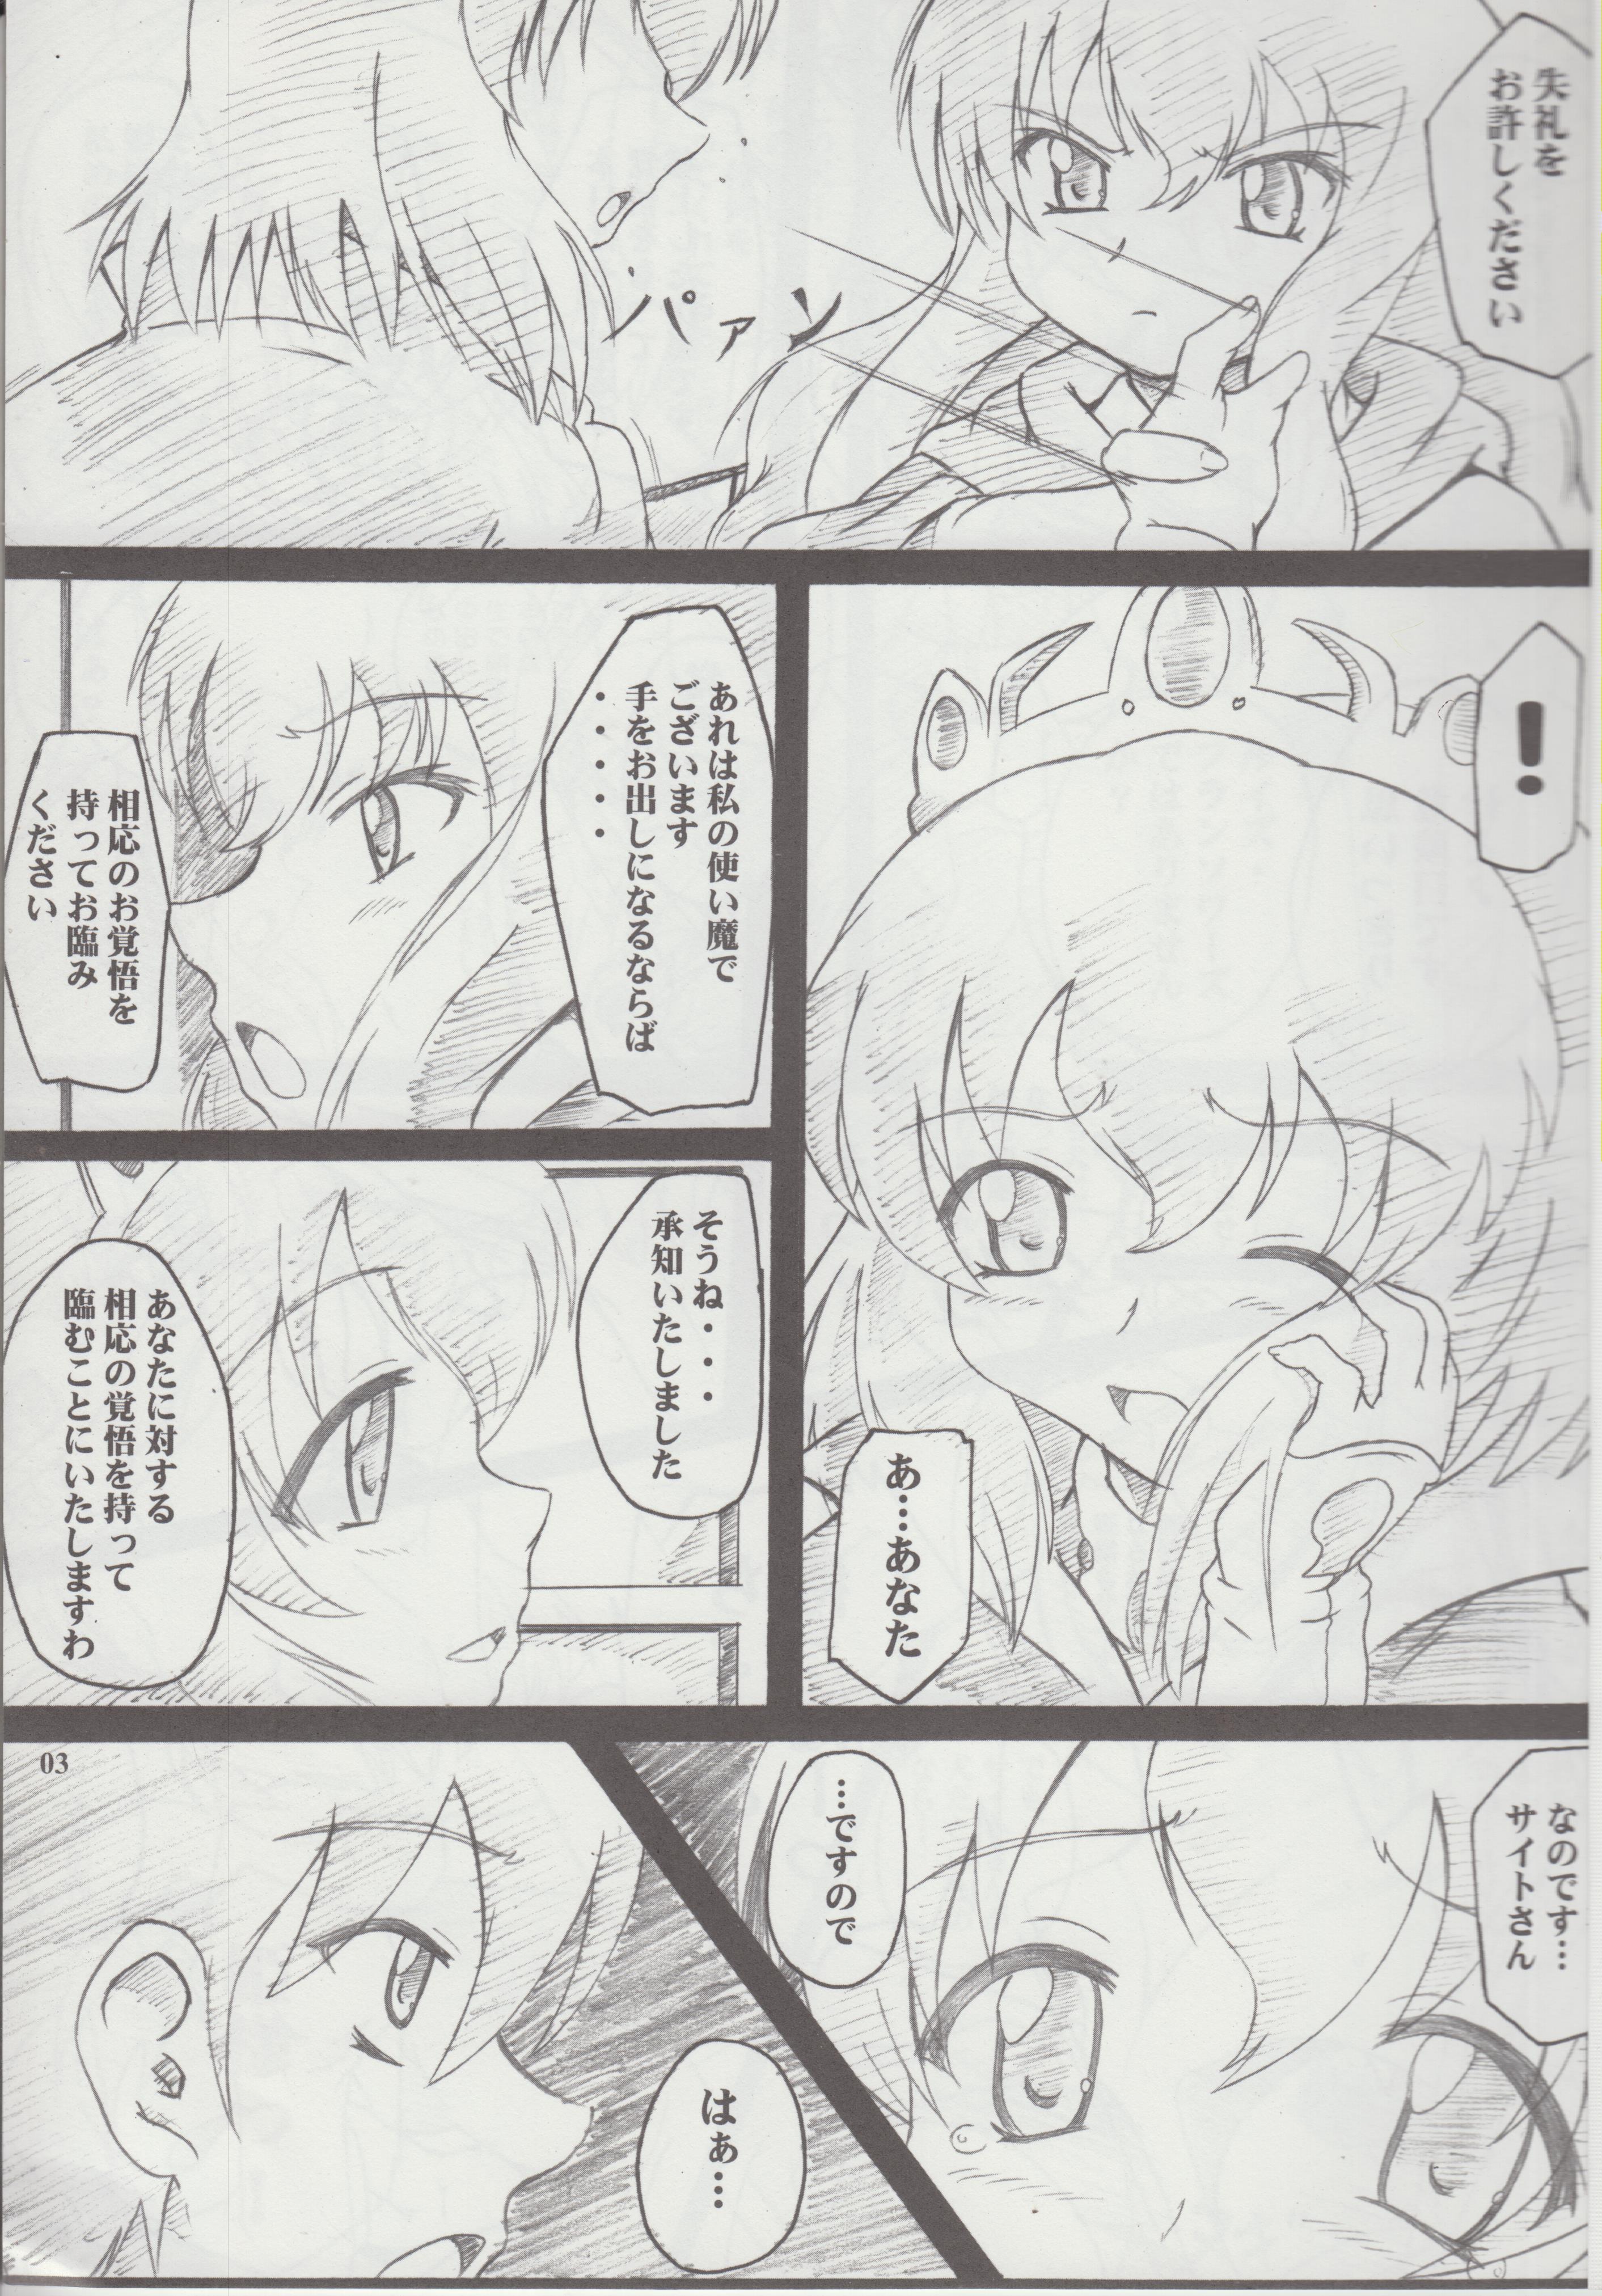 Satin Gaucci! vol. 7 - Zero no tsukaima Stepsister - Page 3